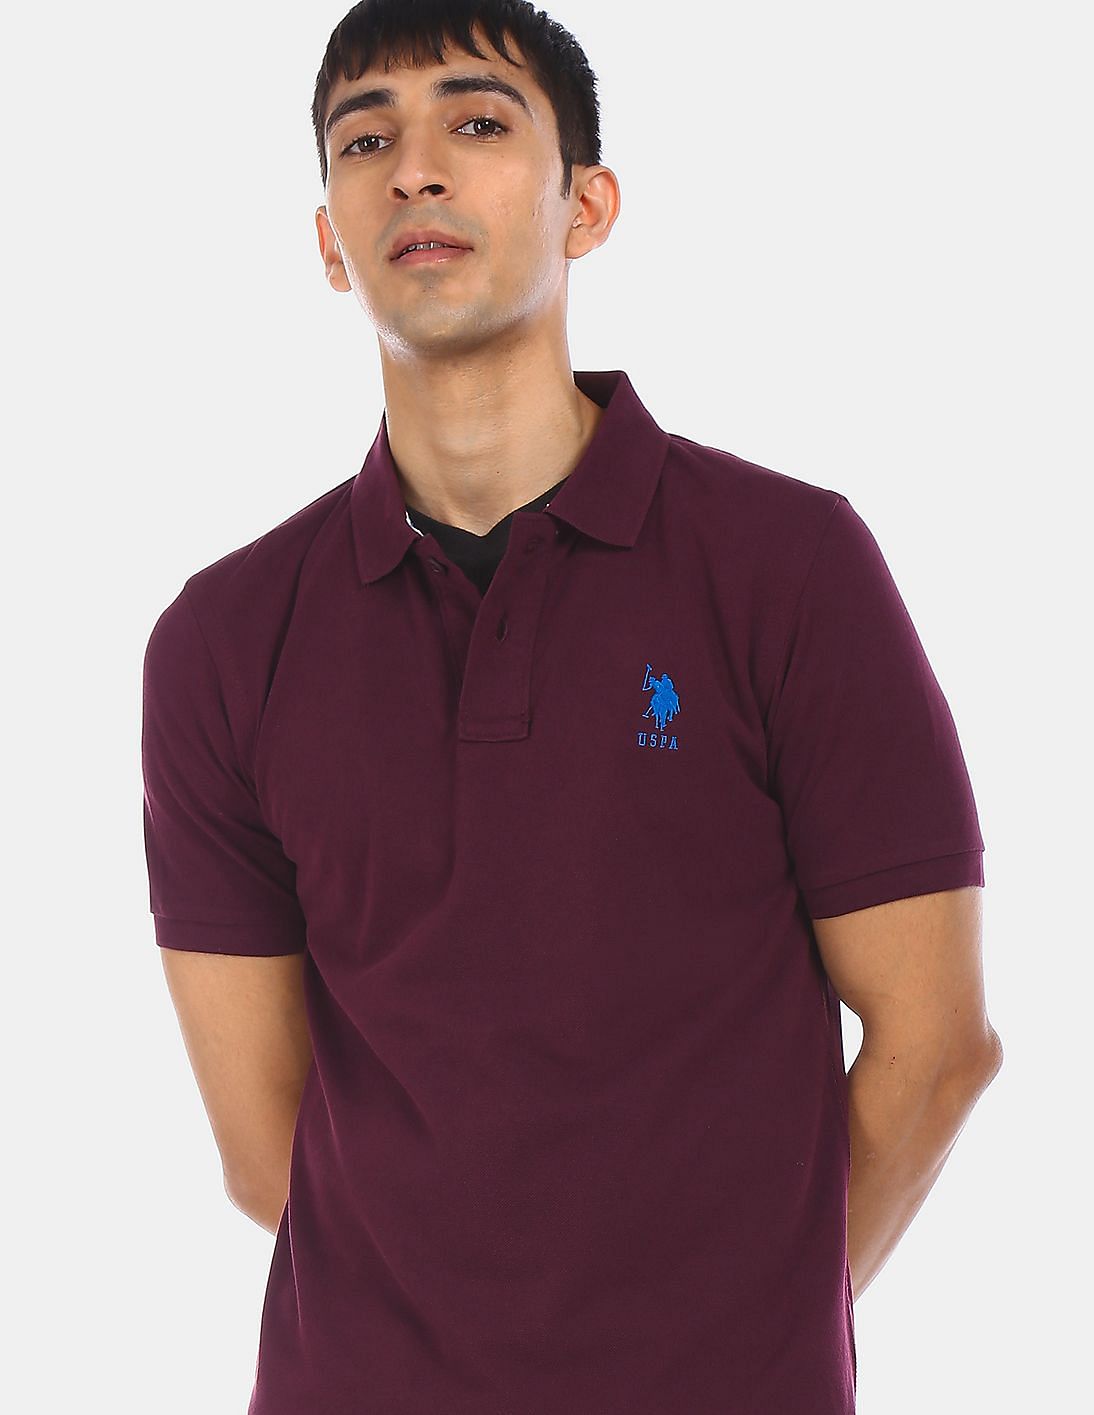 Buy U.S. Polo Assn. Brand Embroidered Pique Polo Shirt - NNNOW.com